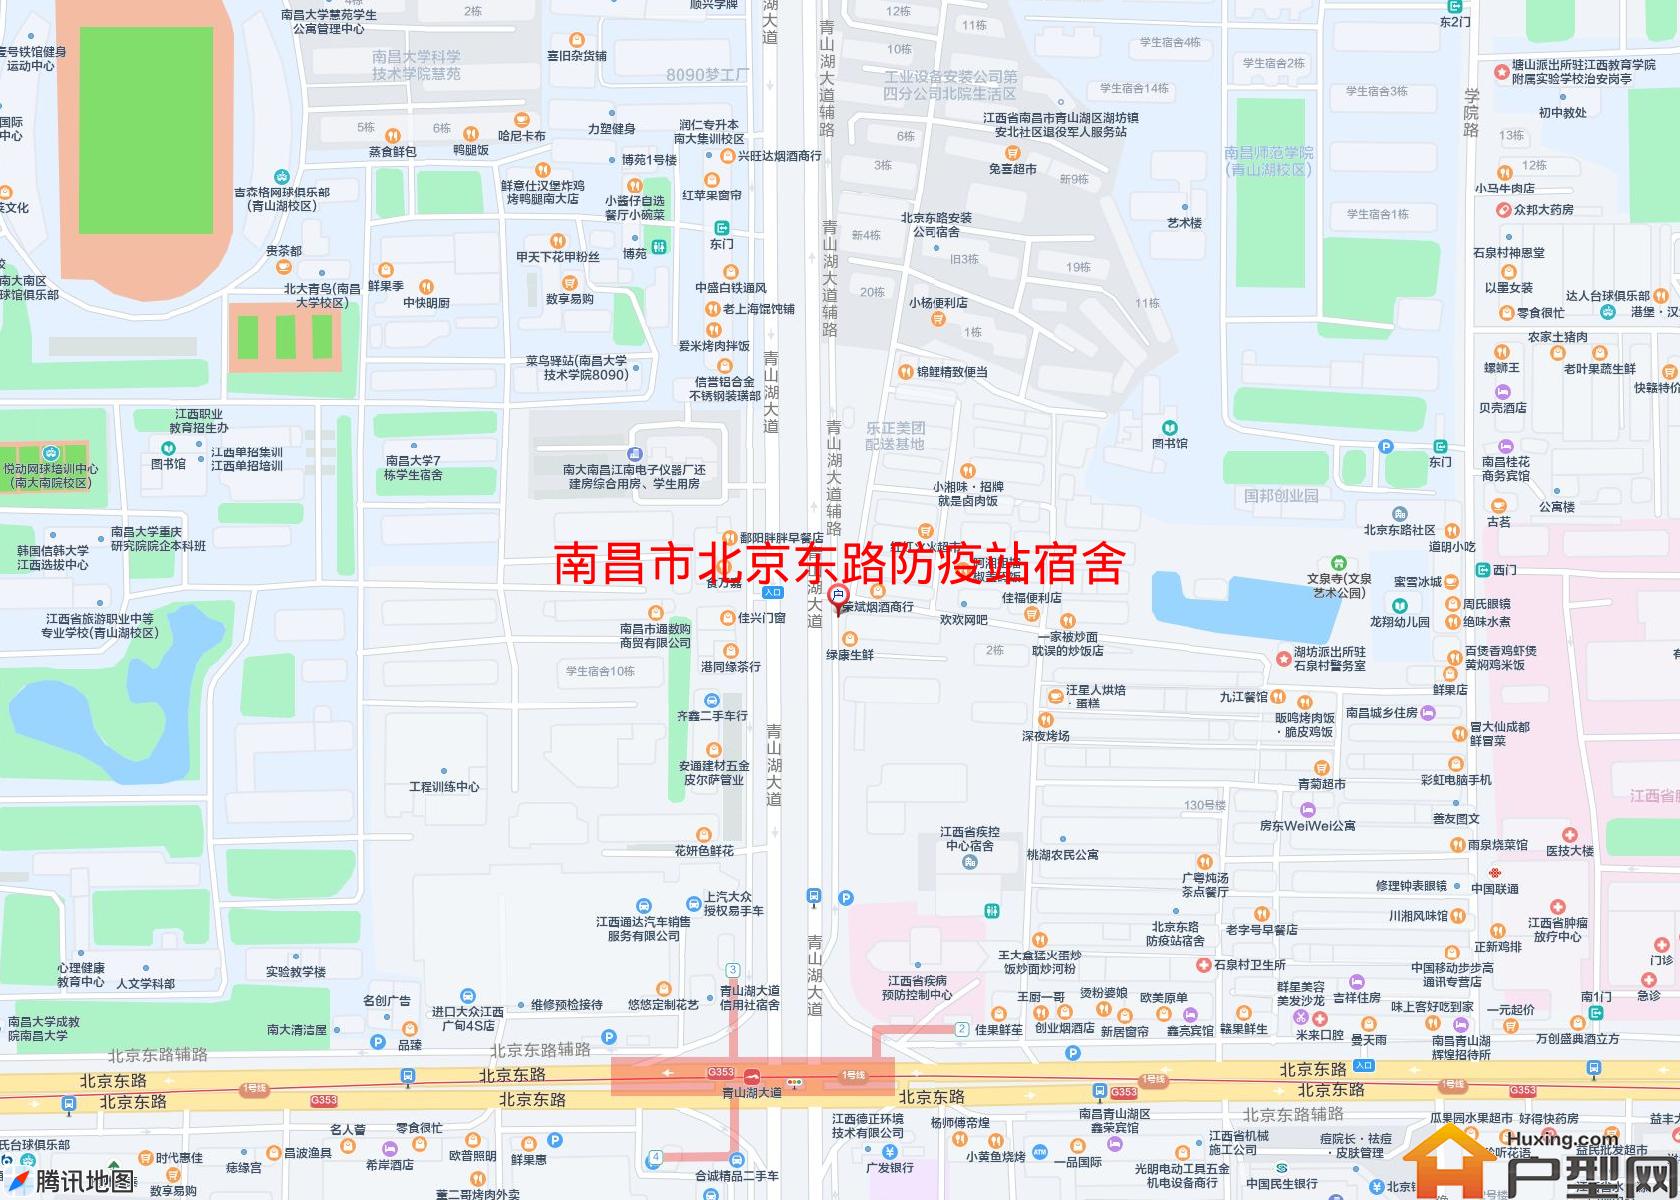 北京东路防疫站宿舍小区 - 户型网